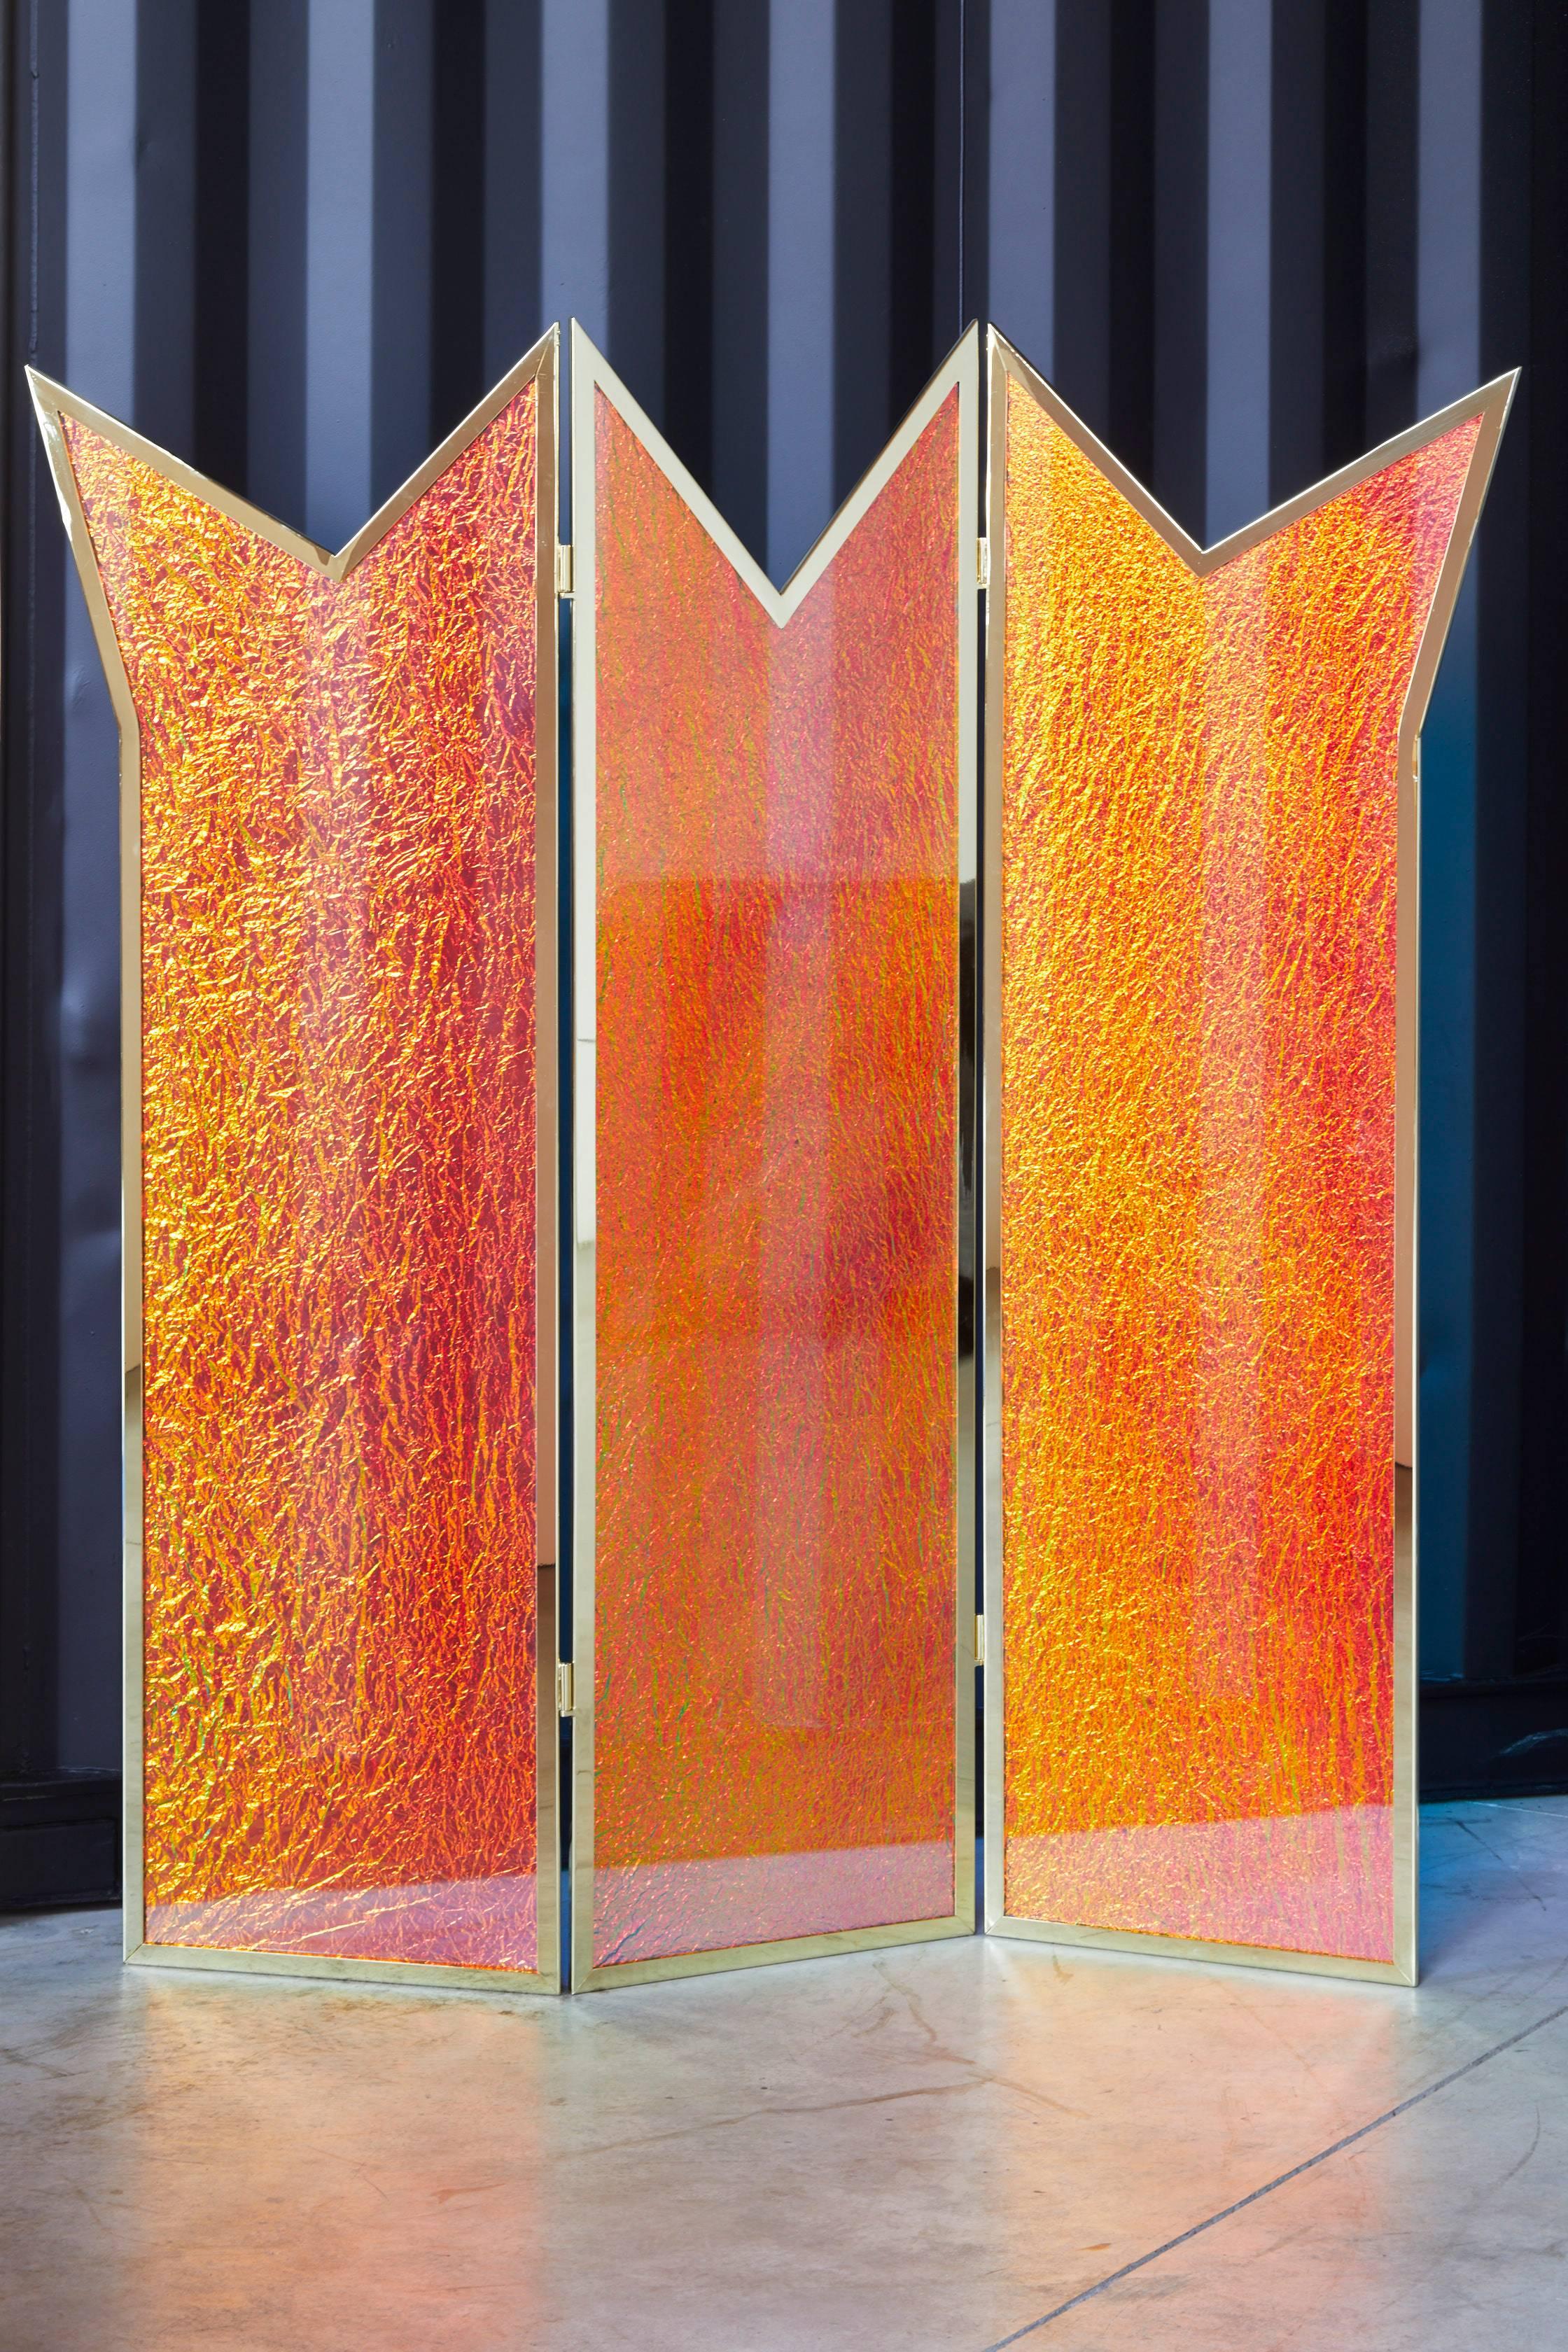 Der Kronen-Raumteiler wurde von dem Künstler Troy Smith gebaut und entworfen. Dieser zeitgenössische und einzigartige Raumteiler ist aus hochwertigen Materialien gefertigt. Von glitzernden Gold- und polierten Edelsteinen von Königs- und